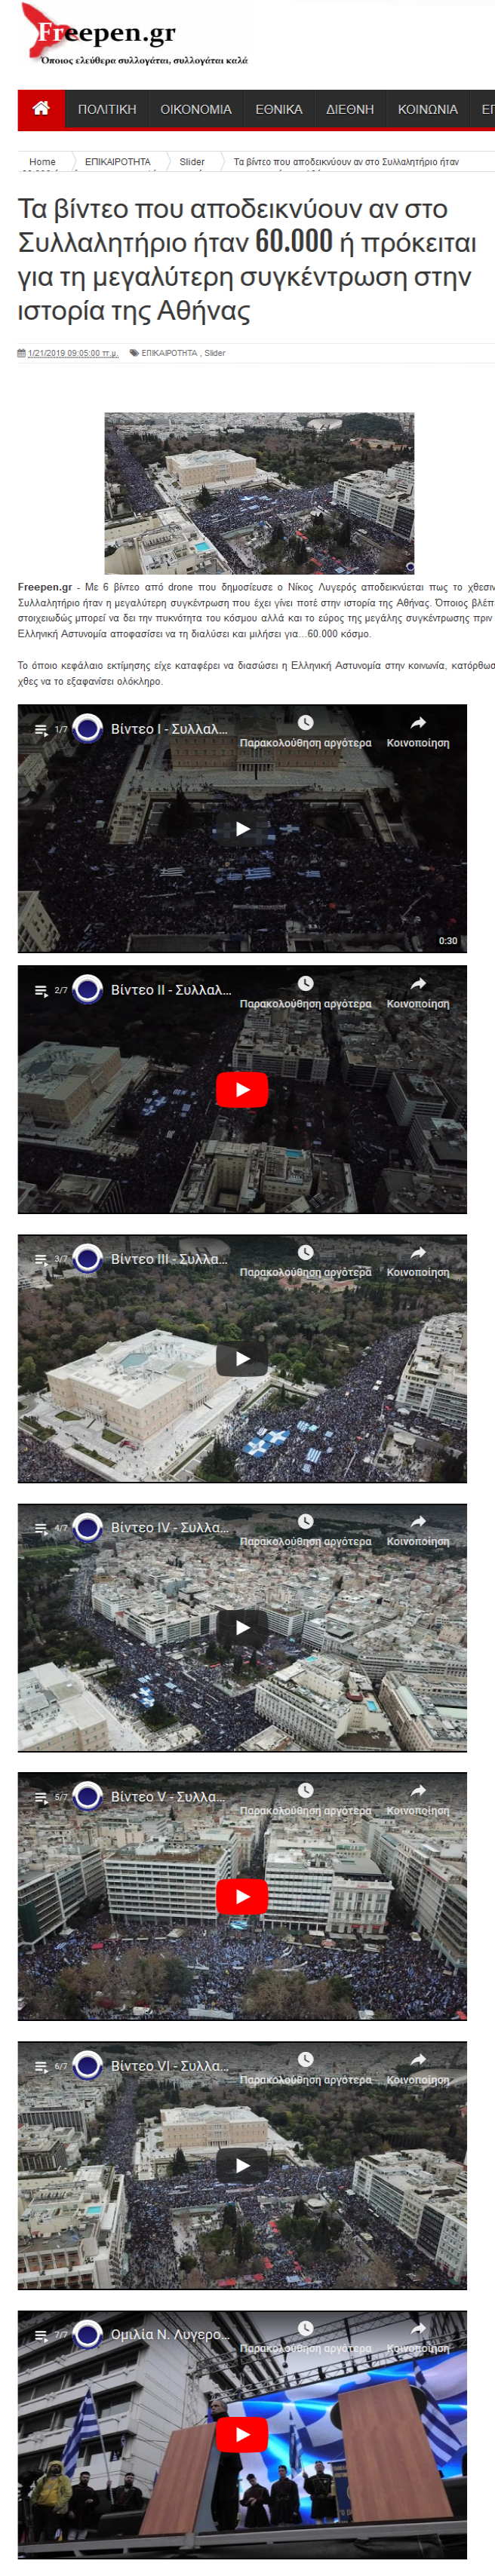 Τα βίντεο που αποδεικνύουν αν στο Συλλαλητήριο ήταν 60.000 ή πρόκειται για τη μεγαλύτερη συγκέντρωση στην ιστορία της Αθήνας, Freepen, 21/01/2019 - Publication